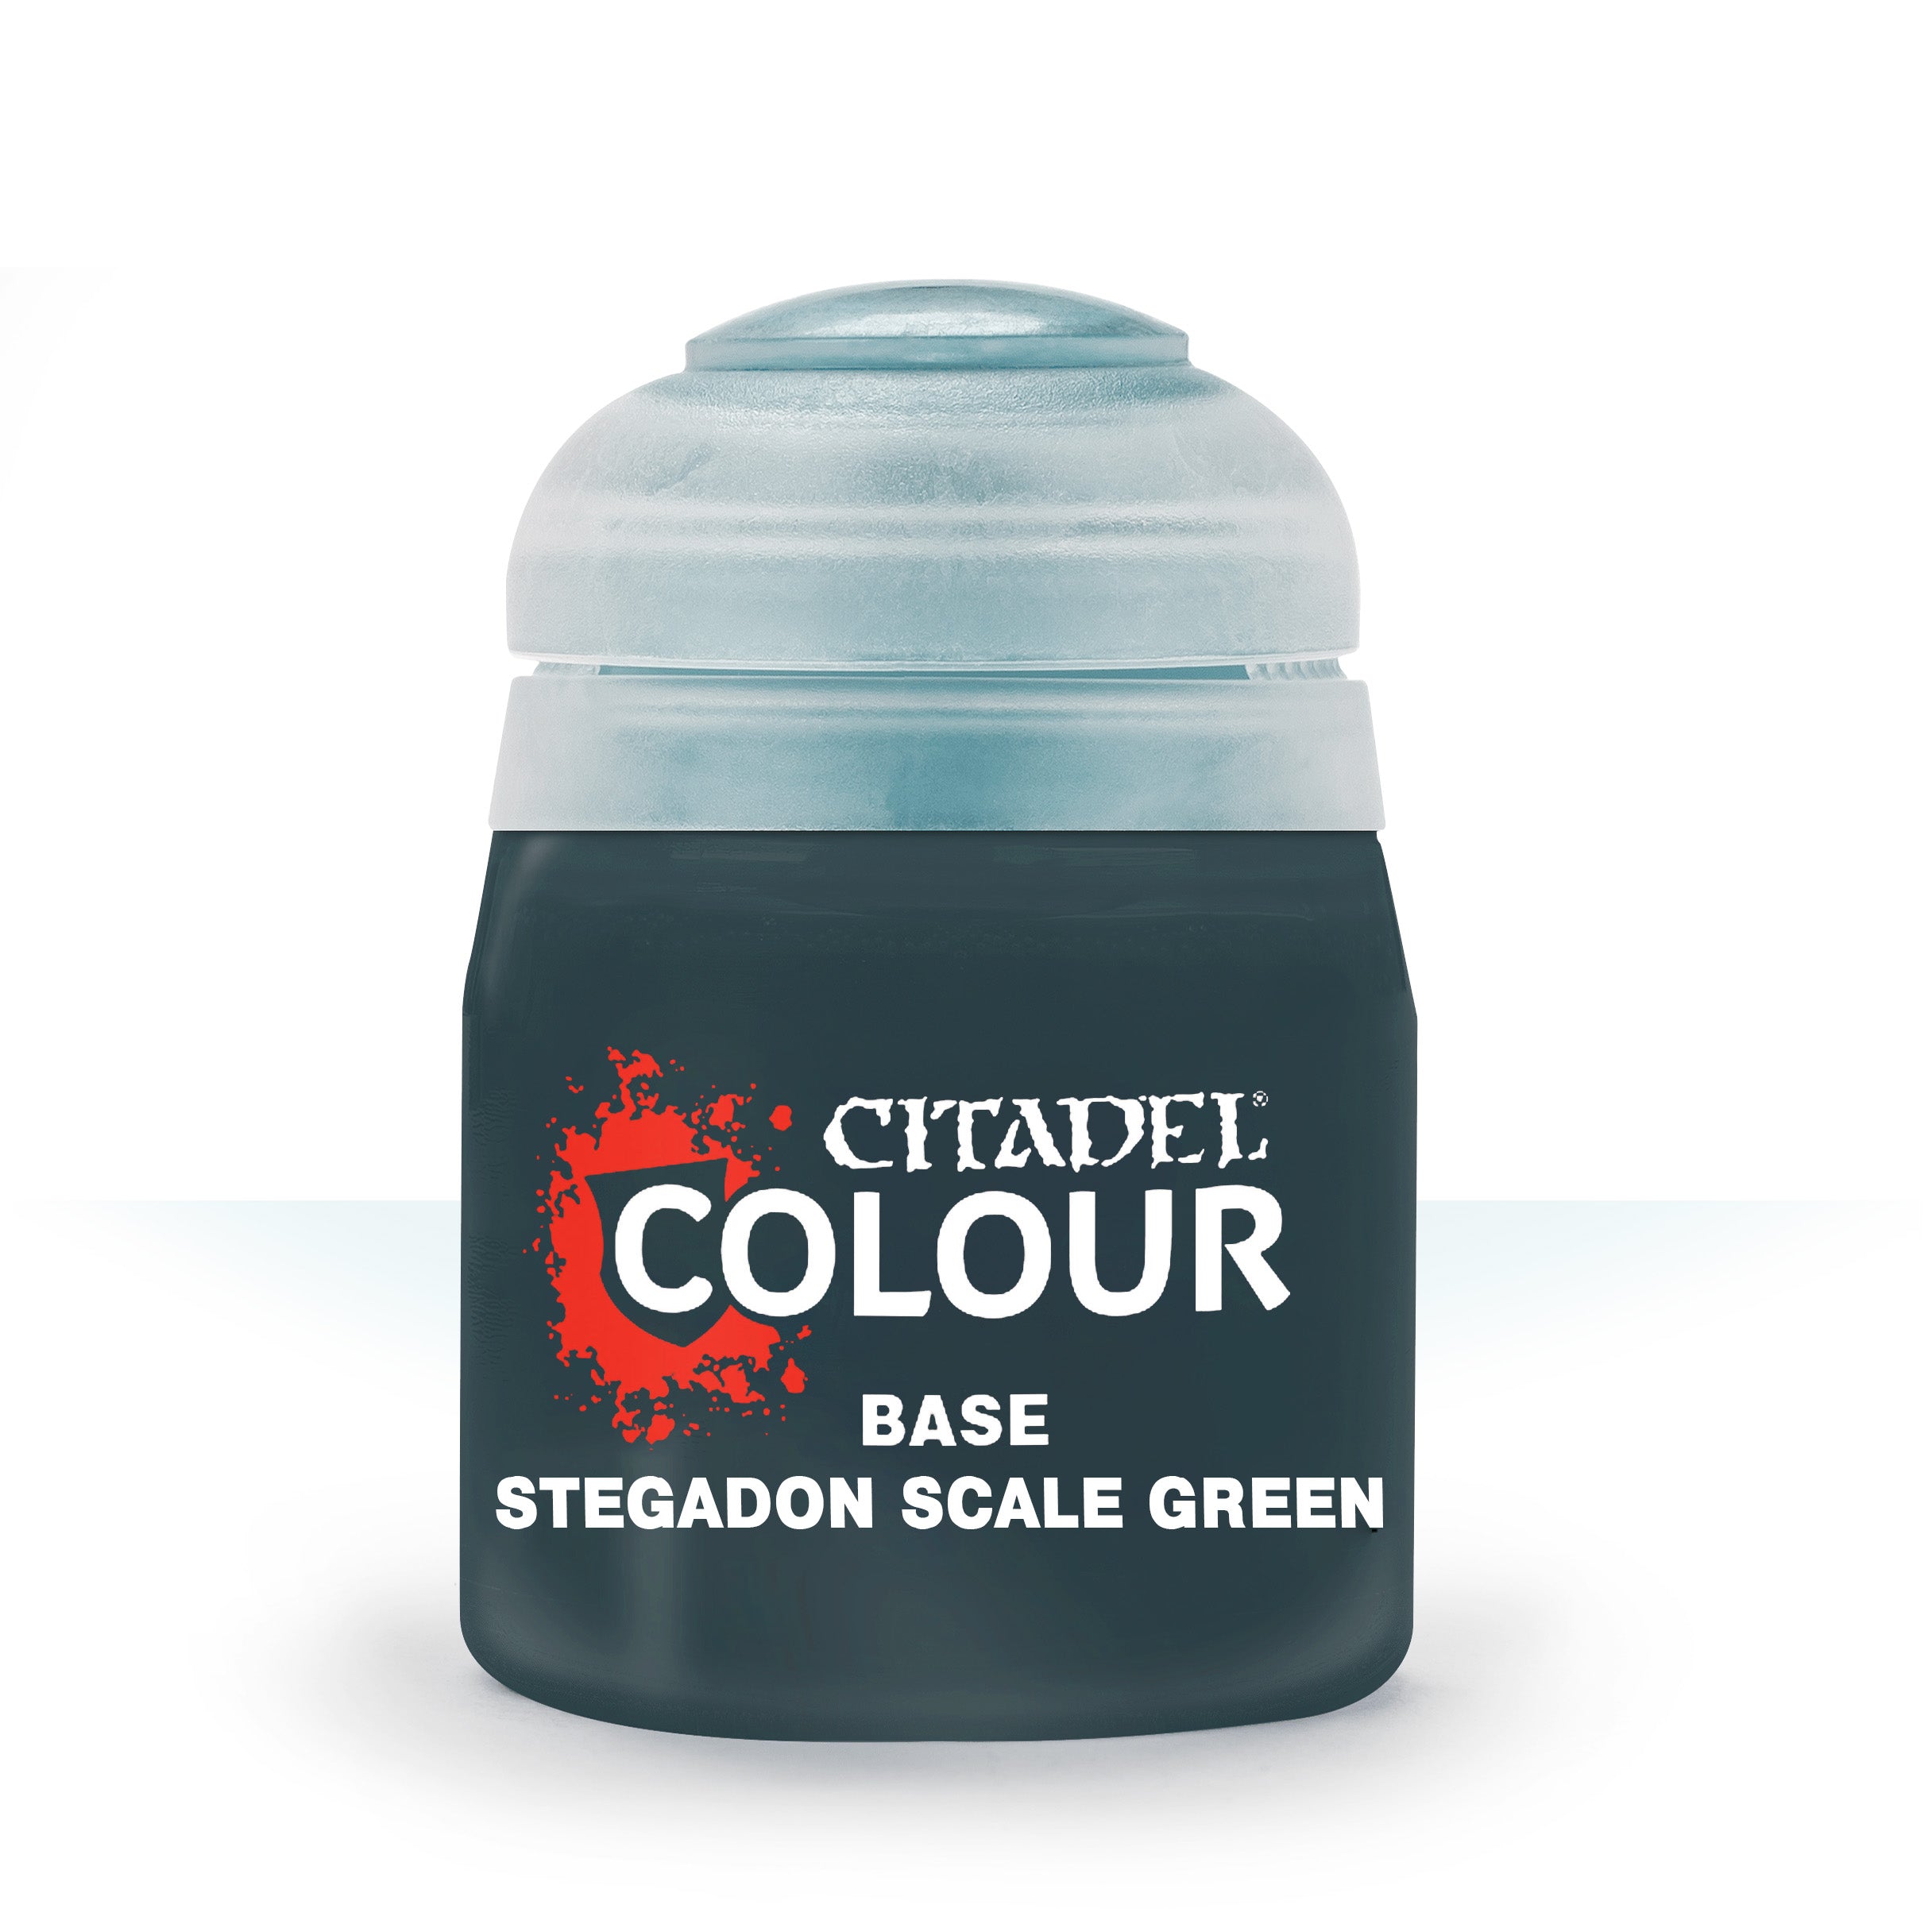 Base: Stegadon Scale Green